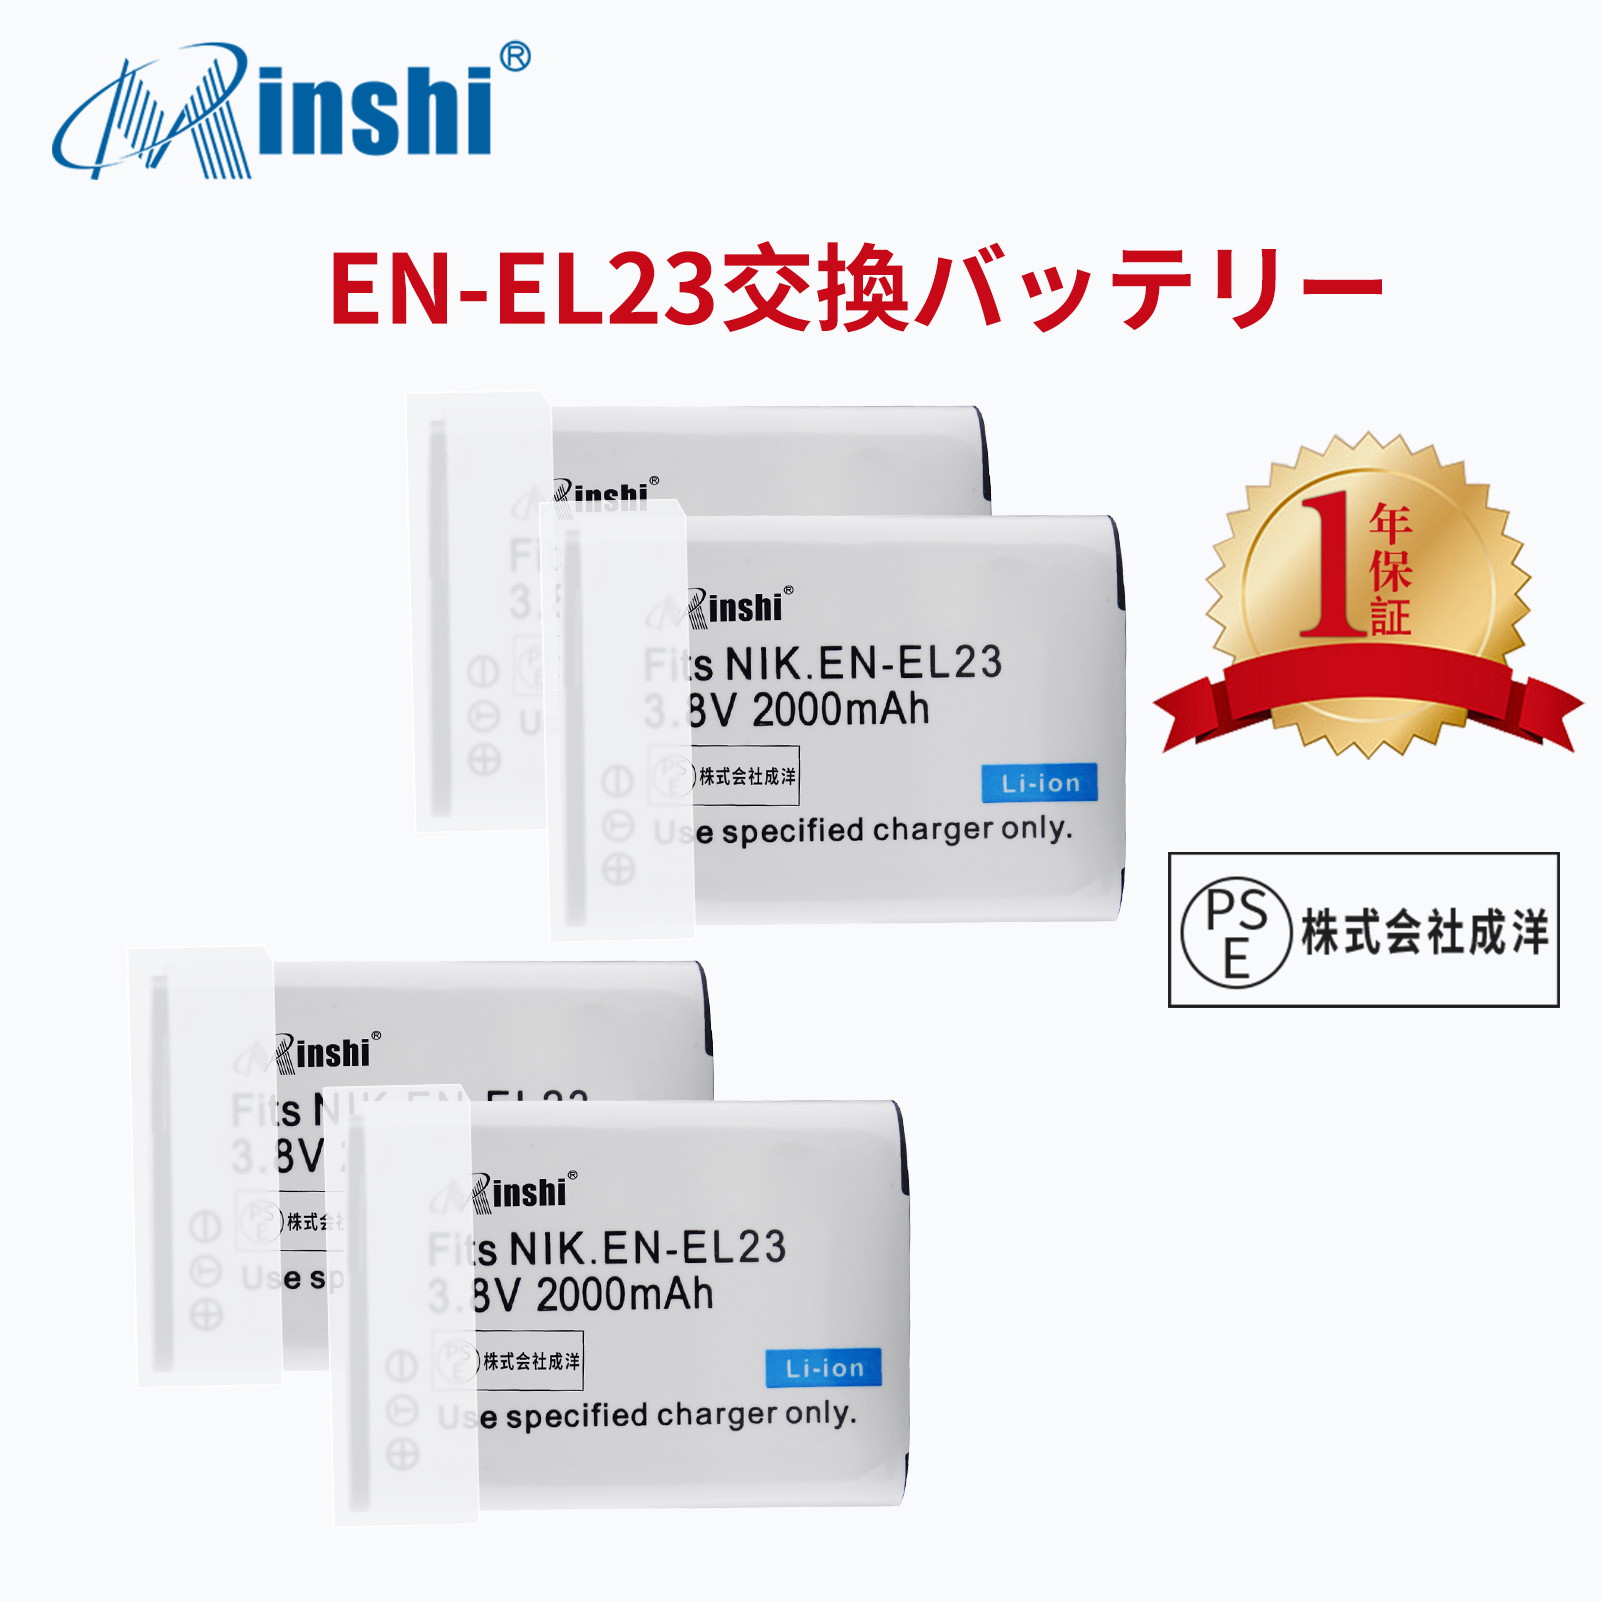 【4個セット】NIKON  B700 1D300 対応  互換バッテリー 2000mAh PSE認定済  Coolpix P600 P900 高品質 EN-EL23 交換用バッテリー